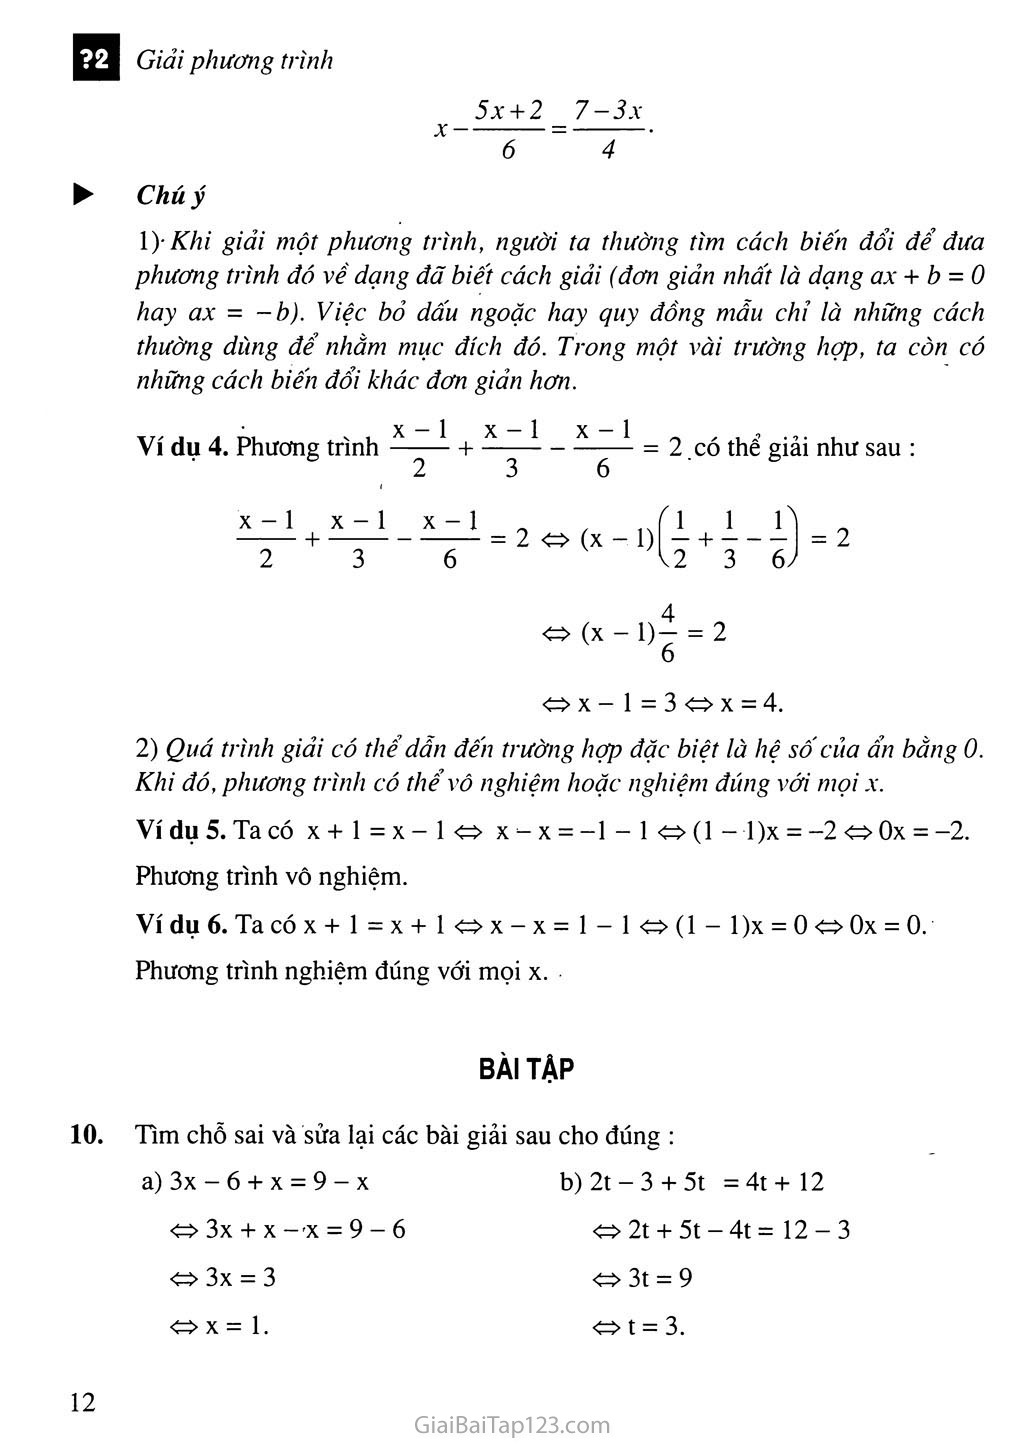 Bài 3. Phương trình đưa được về dạng ax + b = 0 trang 3